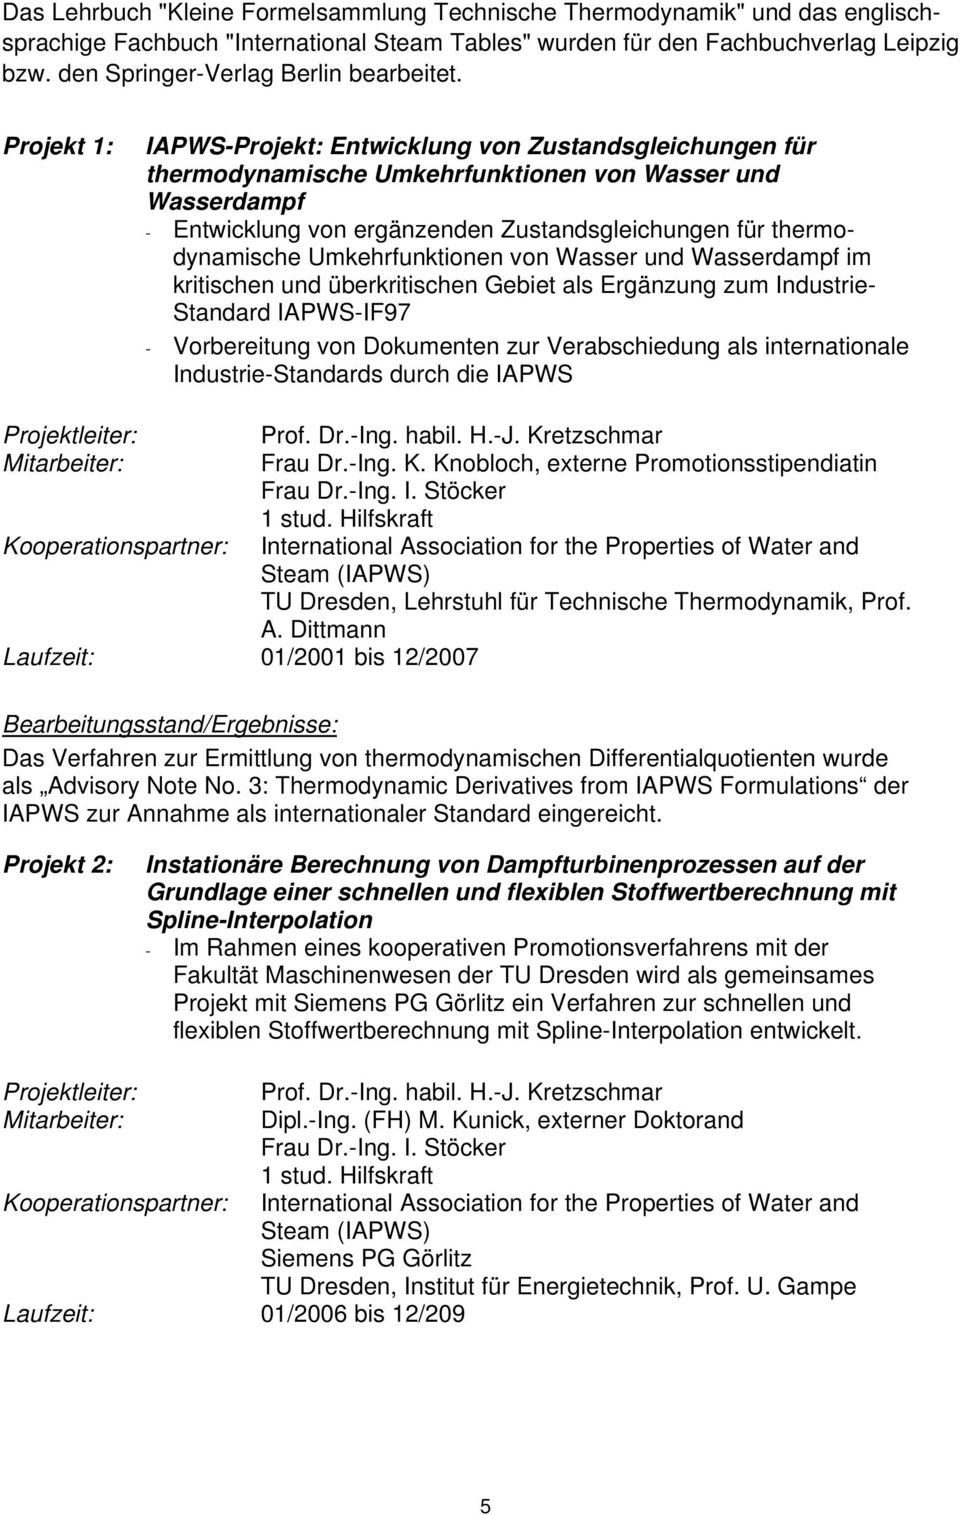 Projekt 1: IAPWS-Projekt: Entwicklung von Zustandsgleichungen für thermodynamische Umkehrfunktionen von Wasser und Wasserdampf - Entwicklung von ergänzenden Zustandsgleichungen für thermodynamische